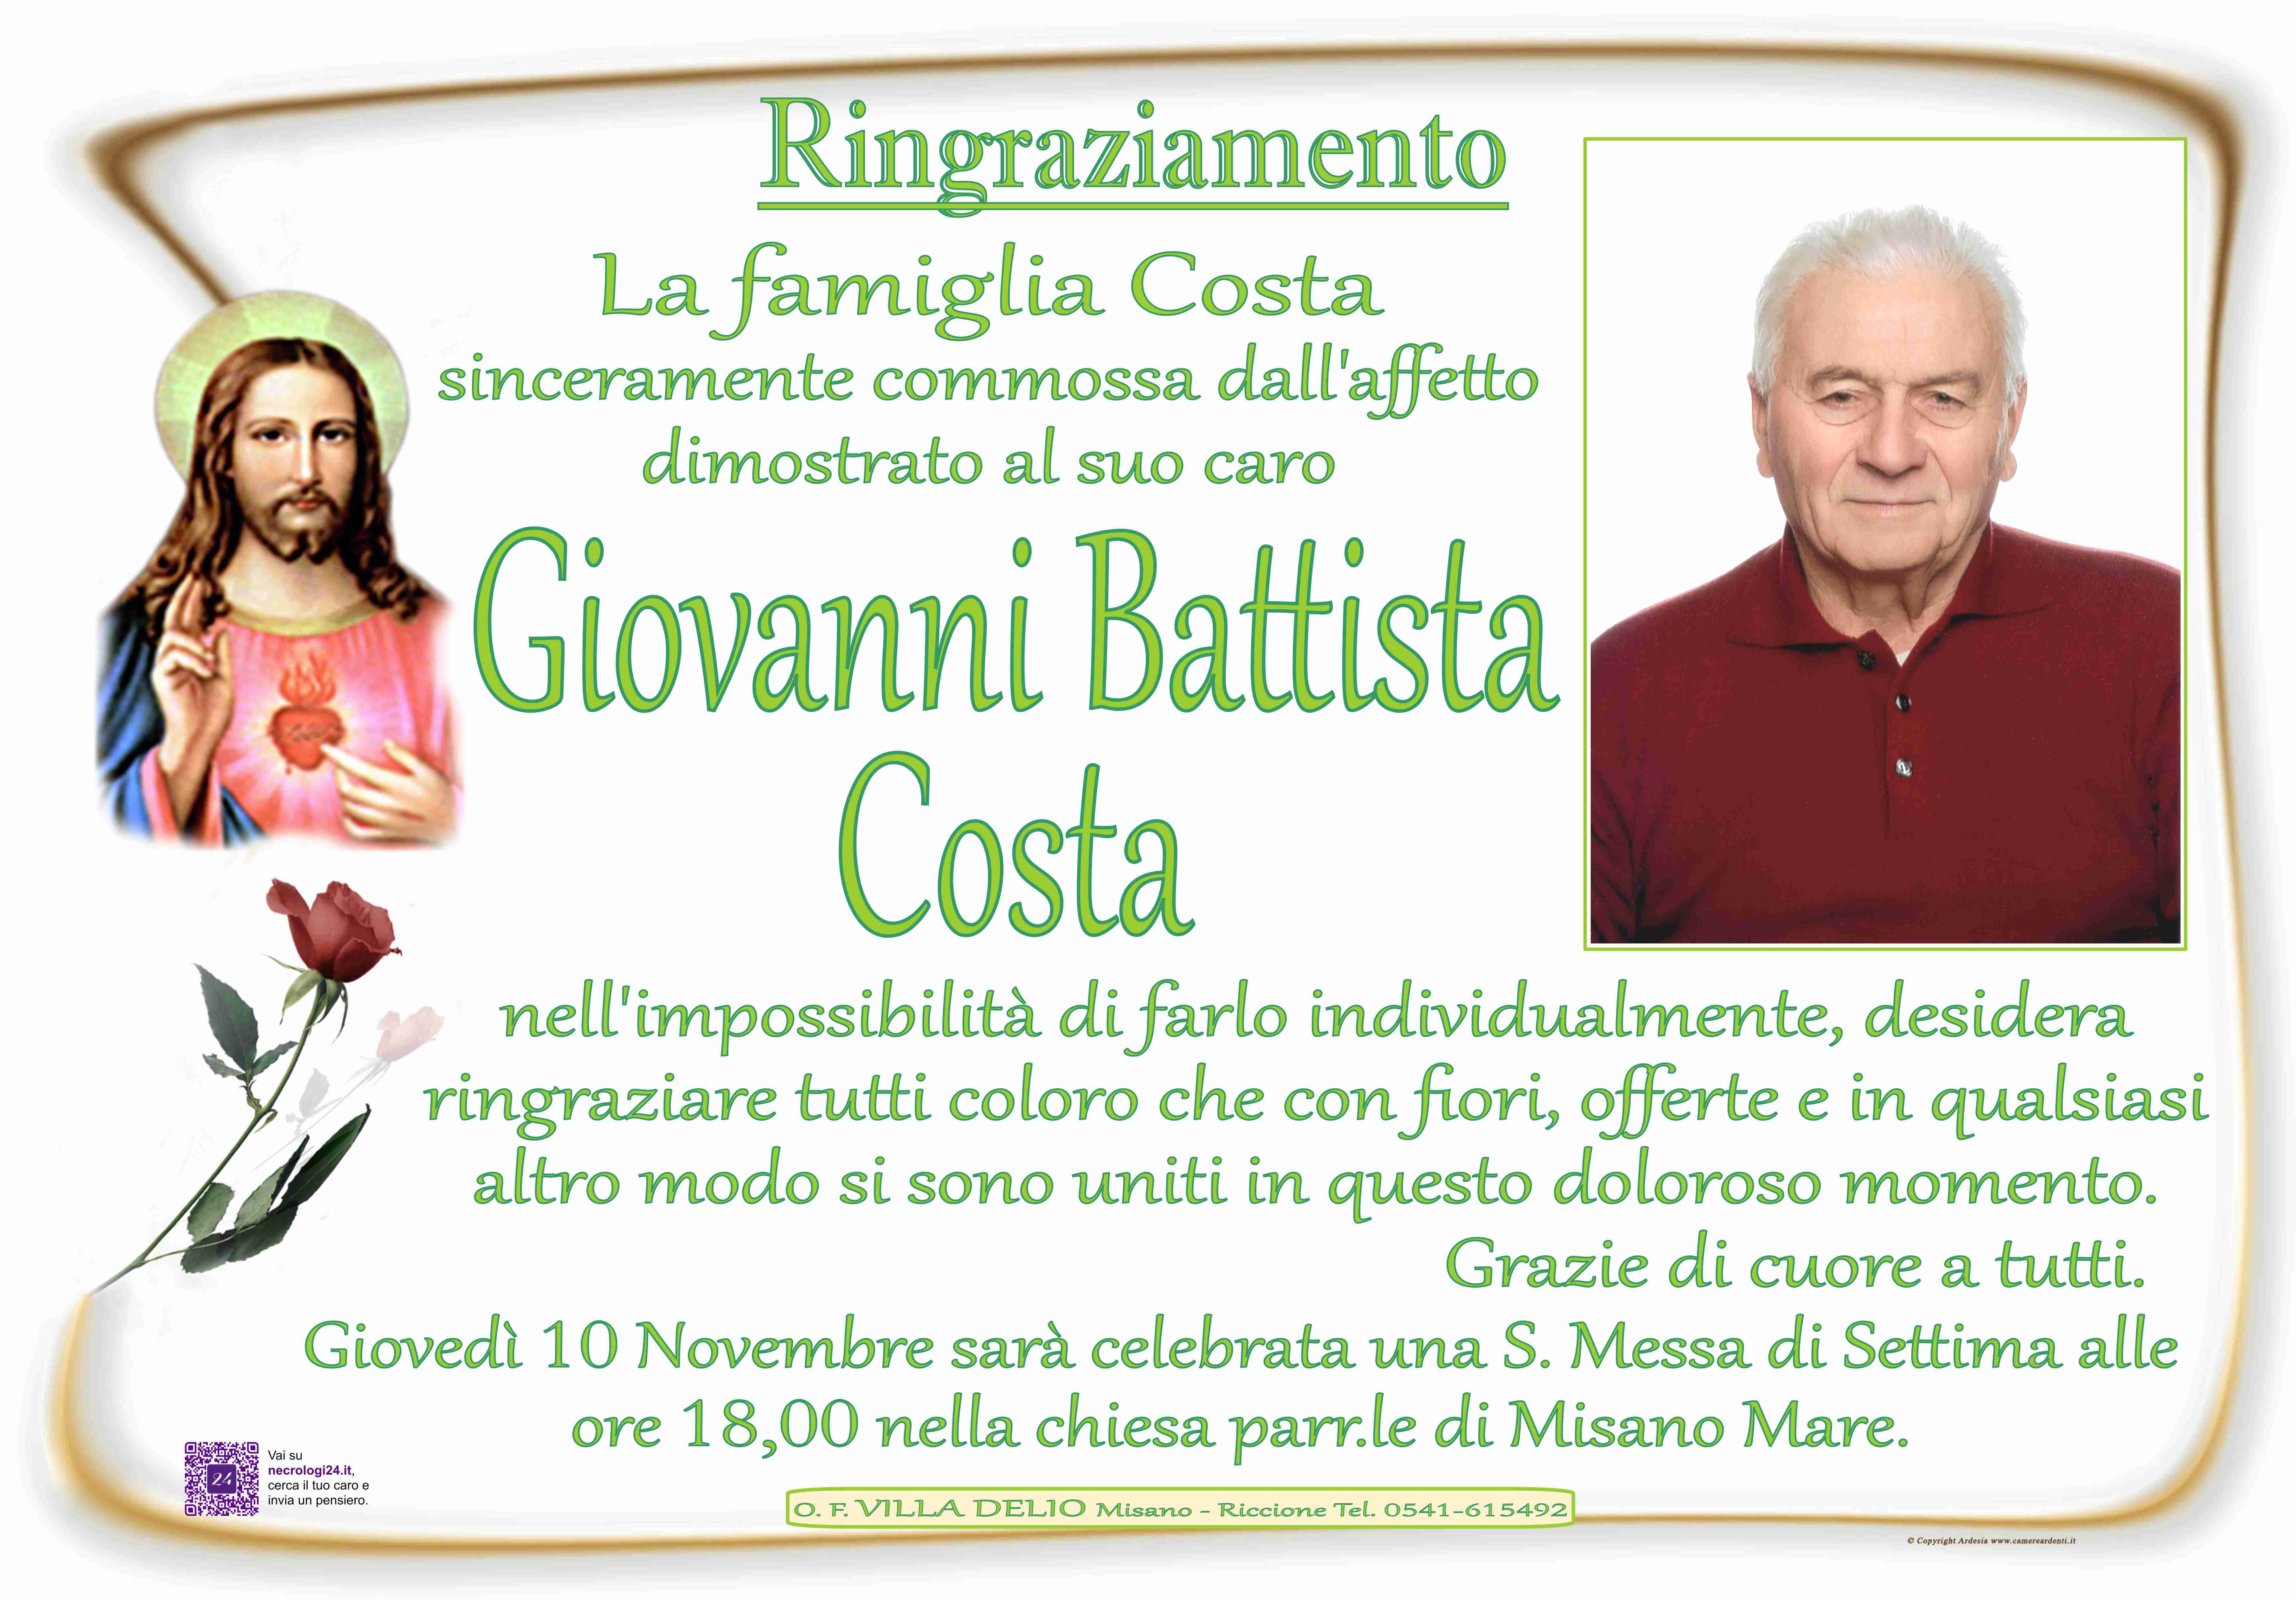 Giovanni Battista Costa